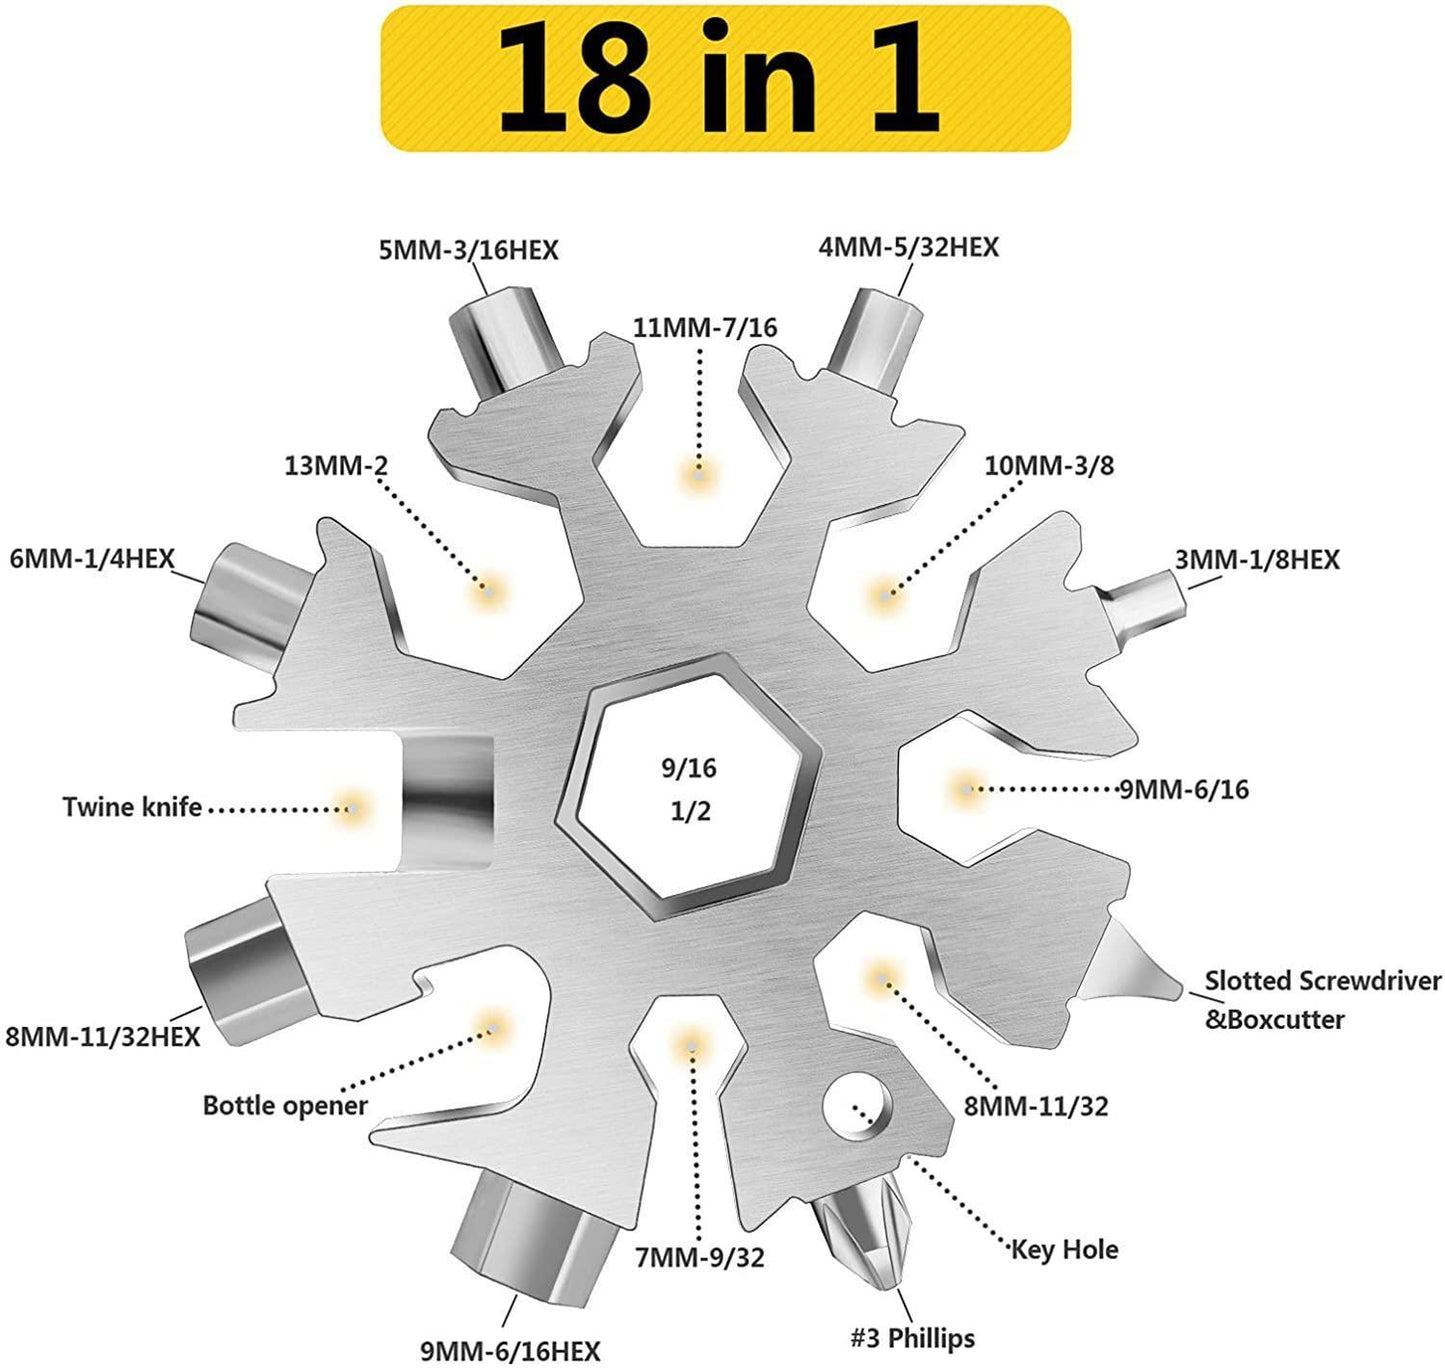 18-i-1 Snowflake multi-tool